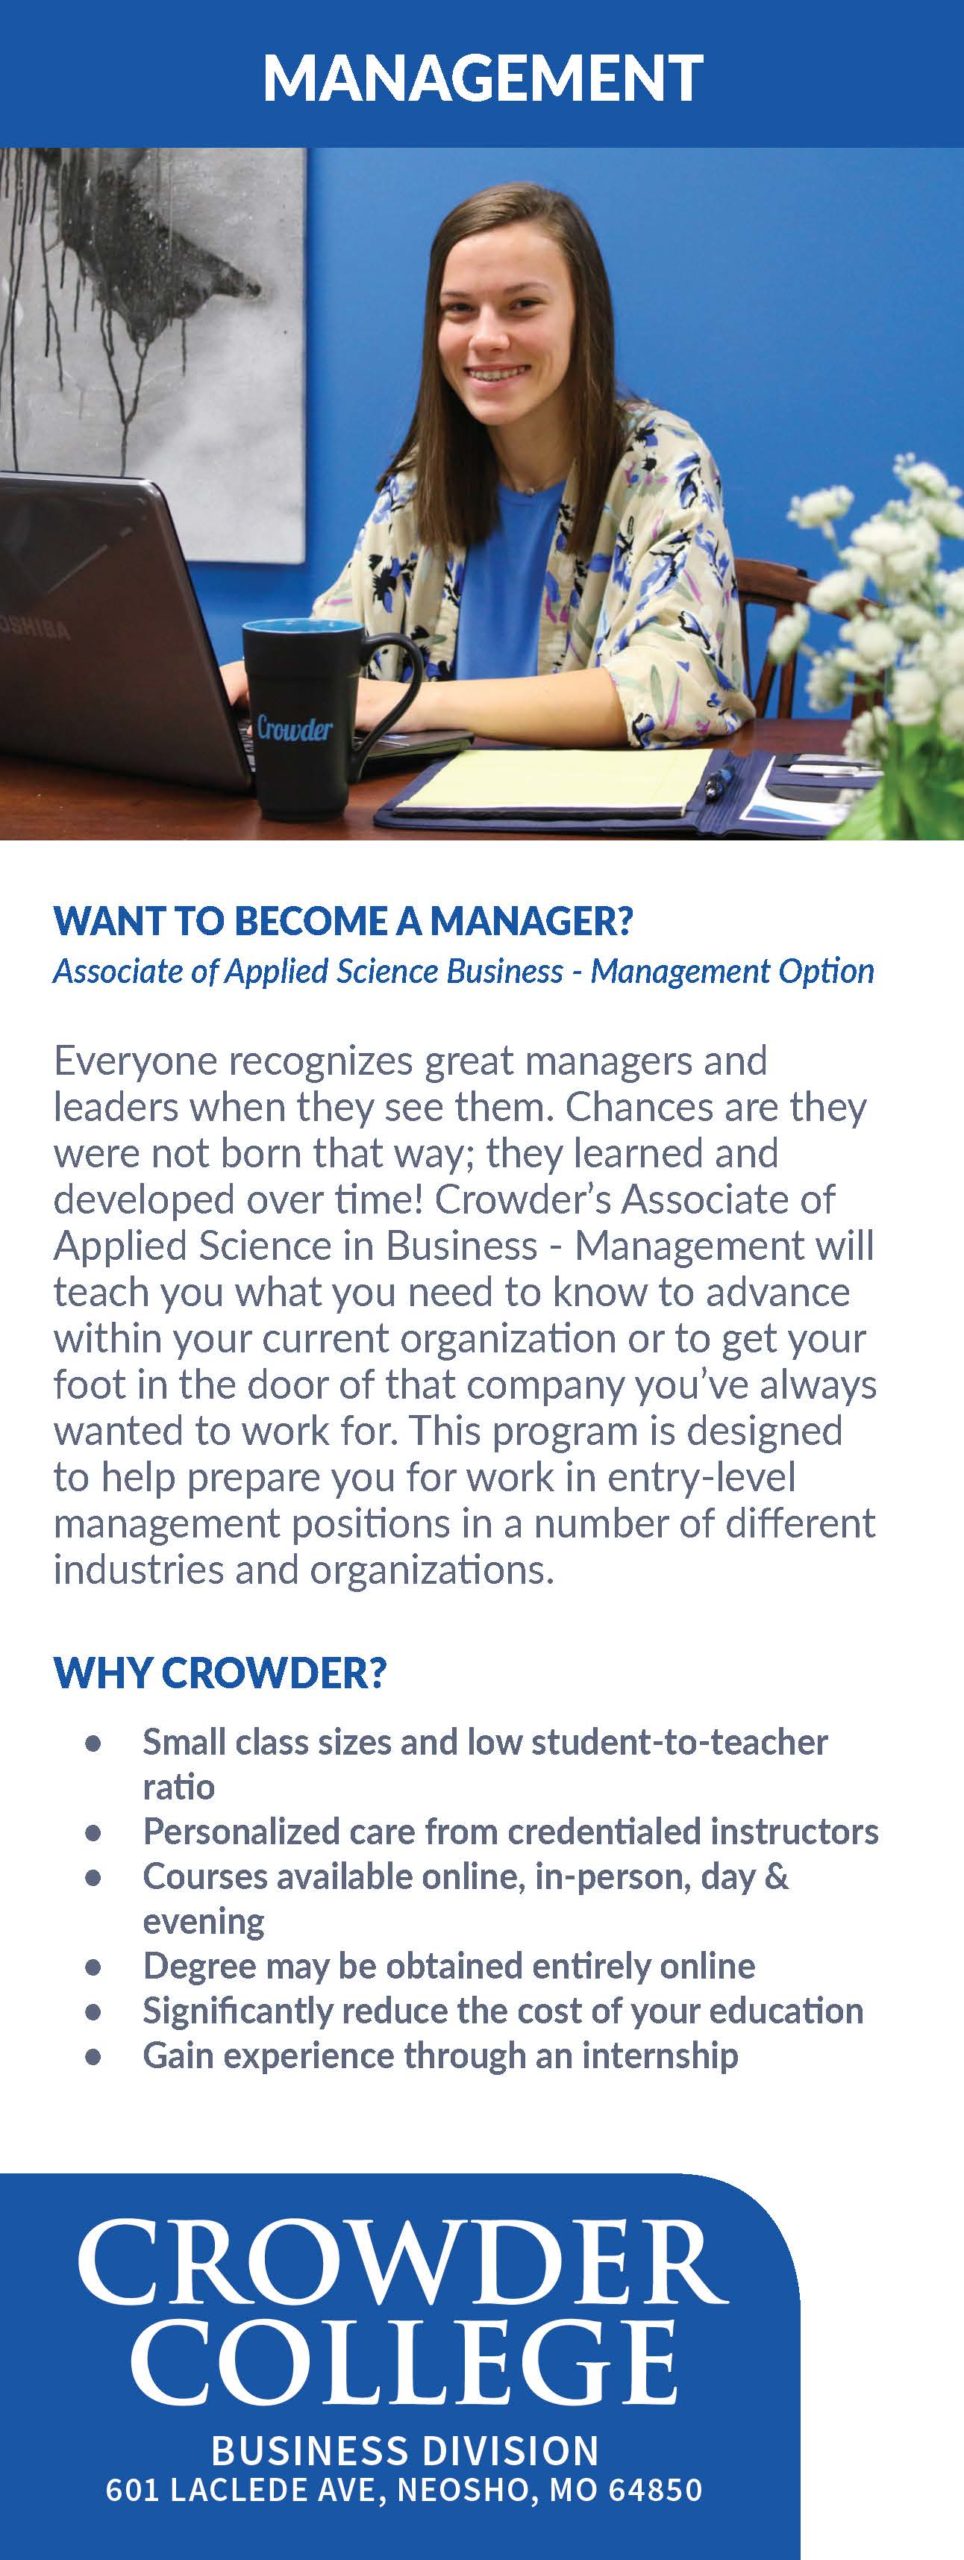 Crowder College Business Management Program information